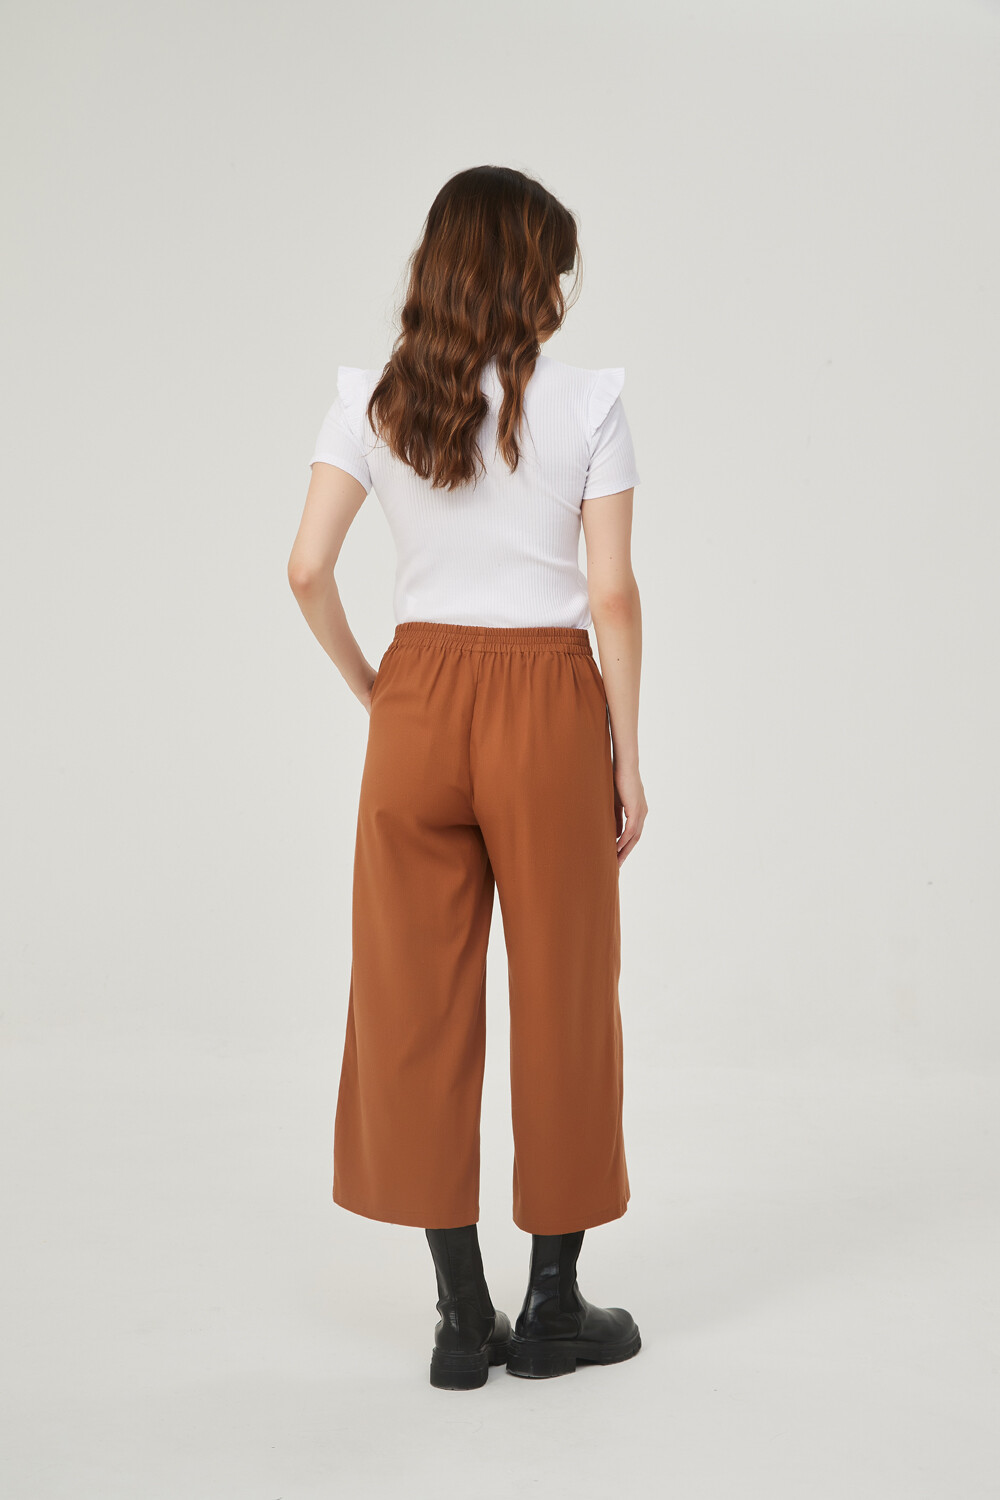 Pantalon Sanguin Marfil / Off White